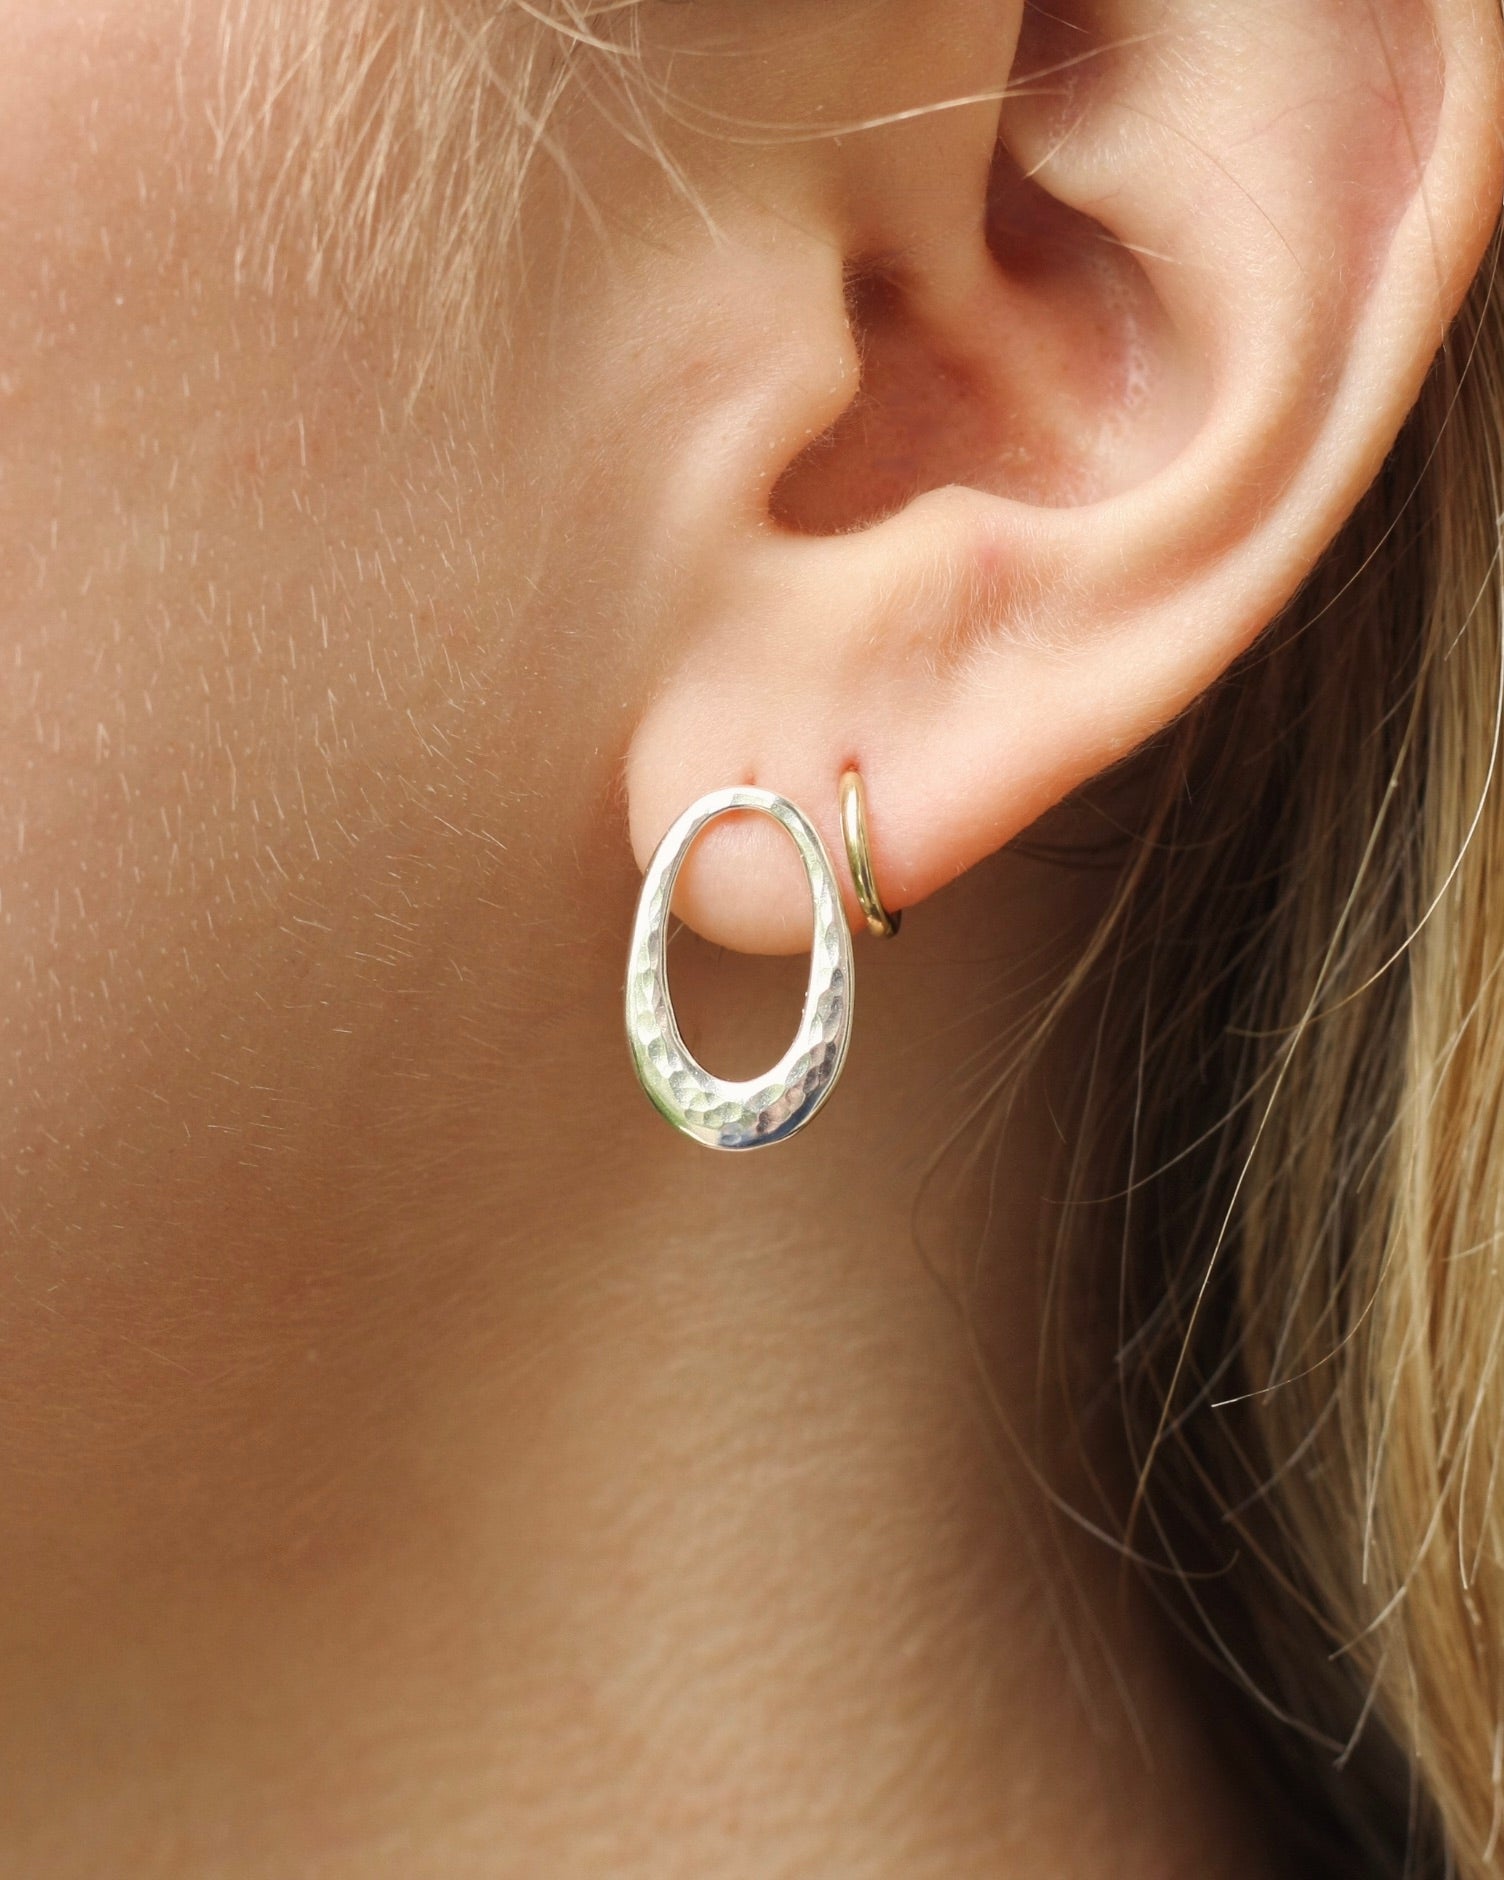 Women's Sterling Silver Hoop Earring Oval - Silver